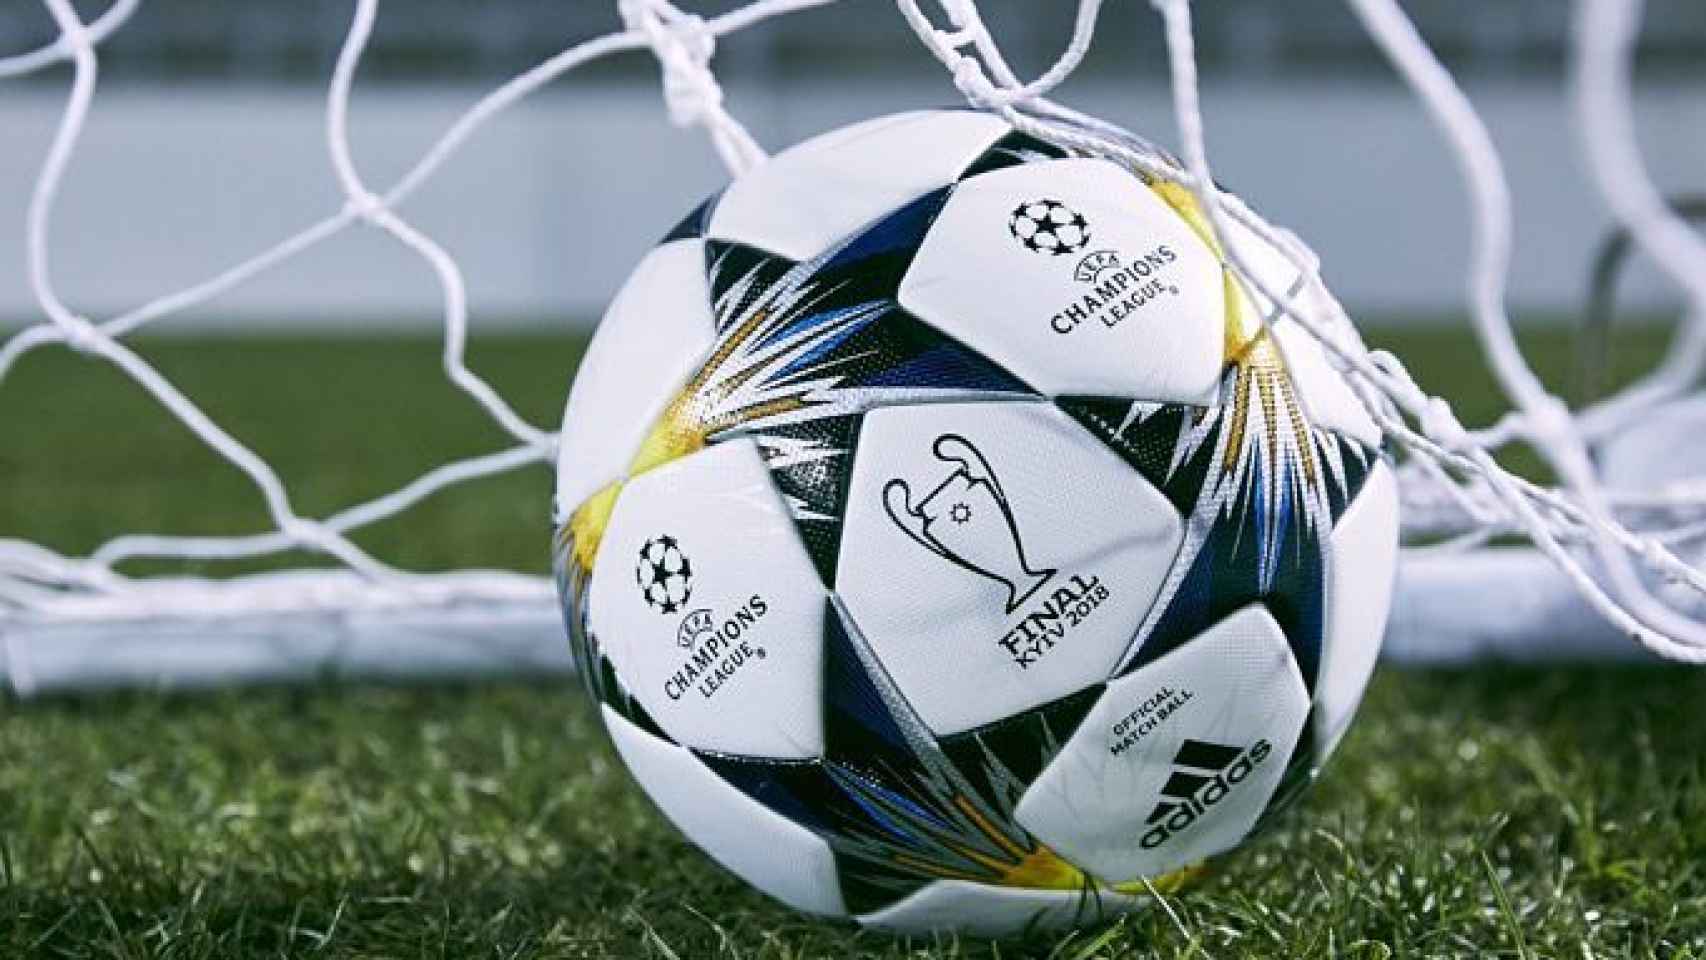 Comprar Balón de fútbol UEFA Champions League Real Madrid CF Adidas